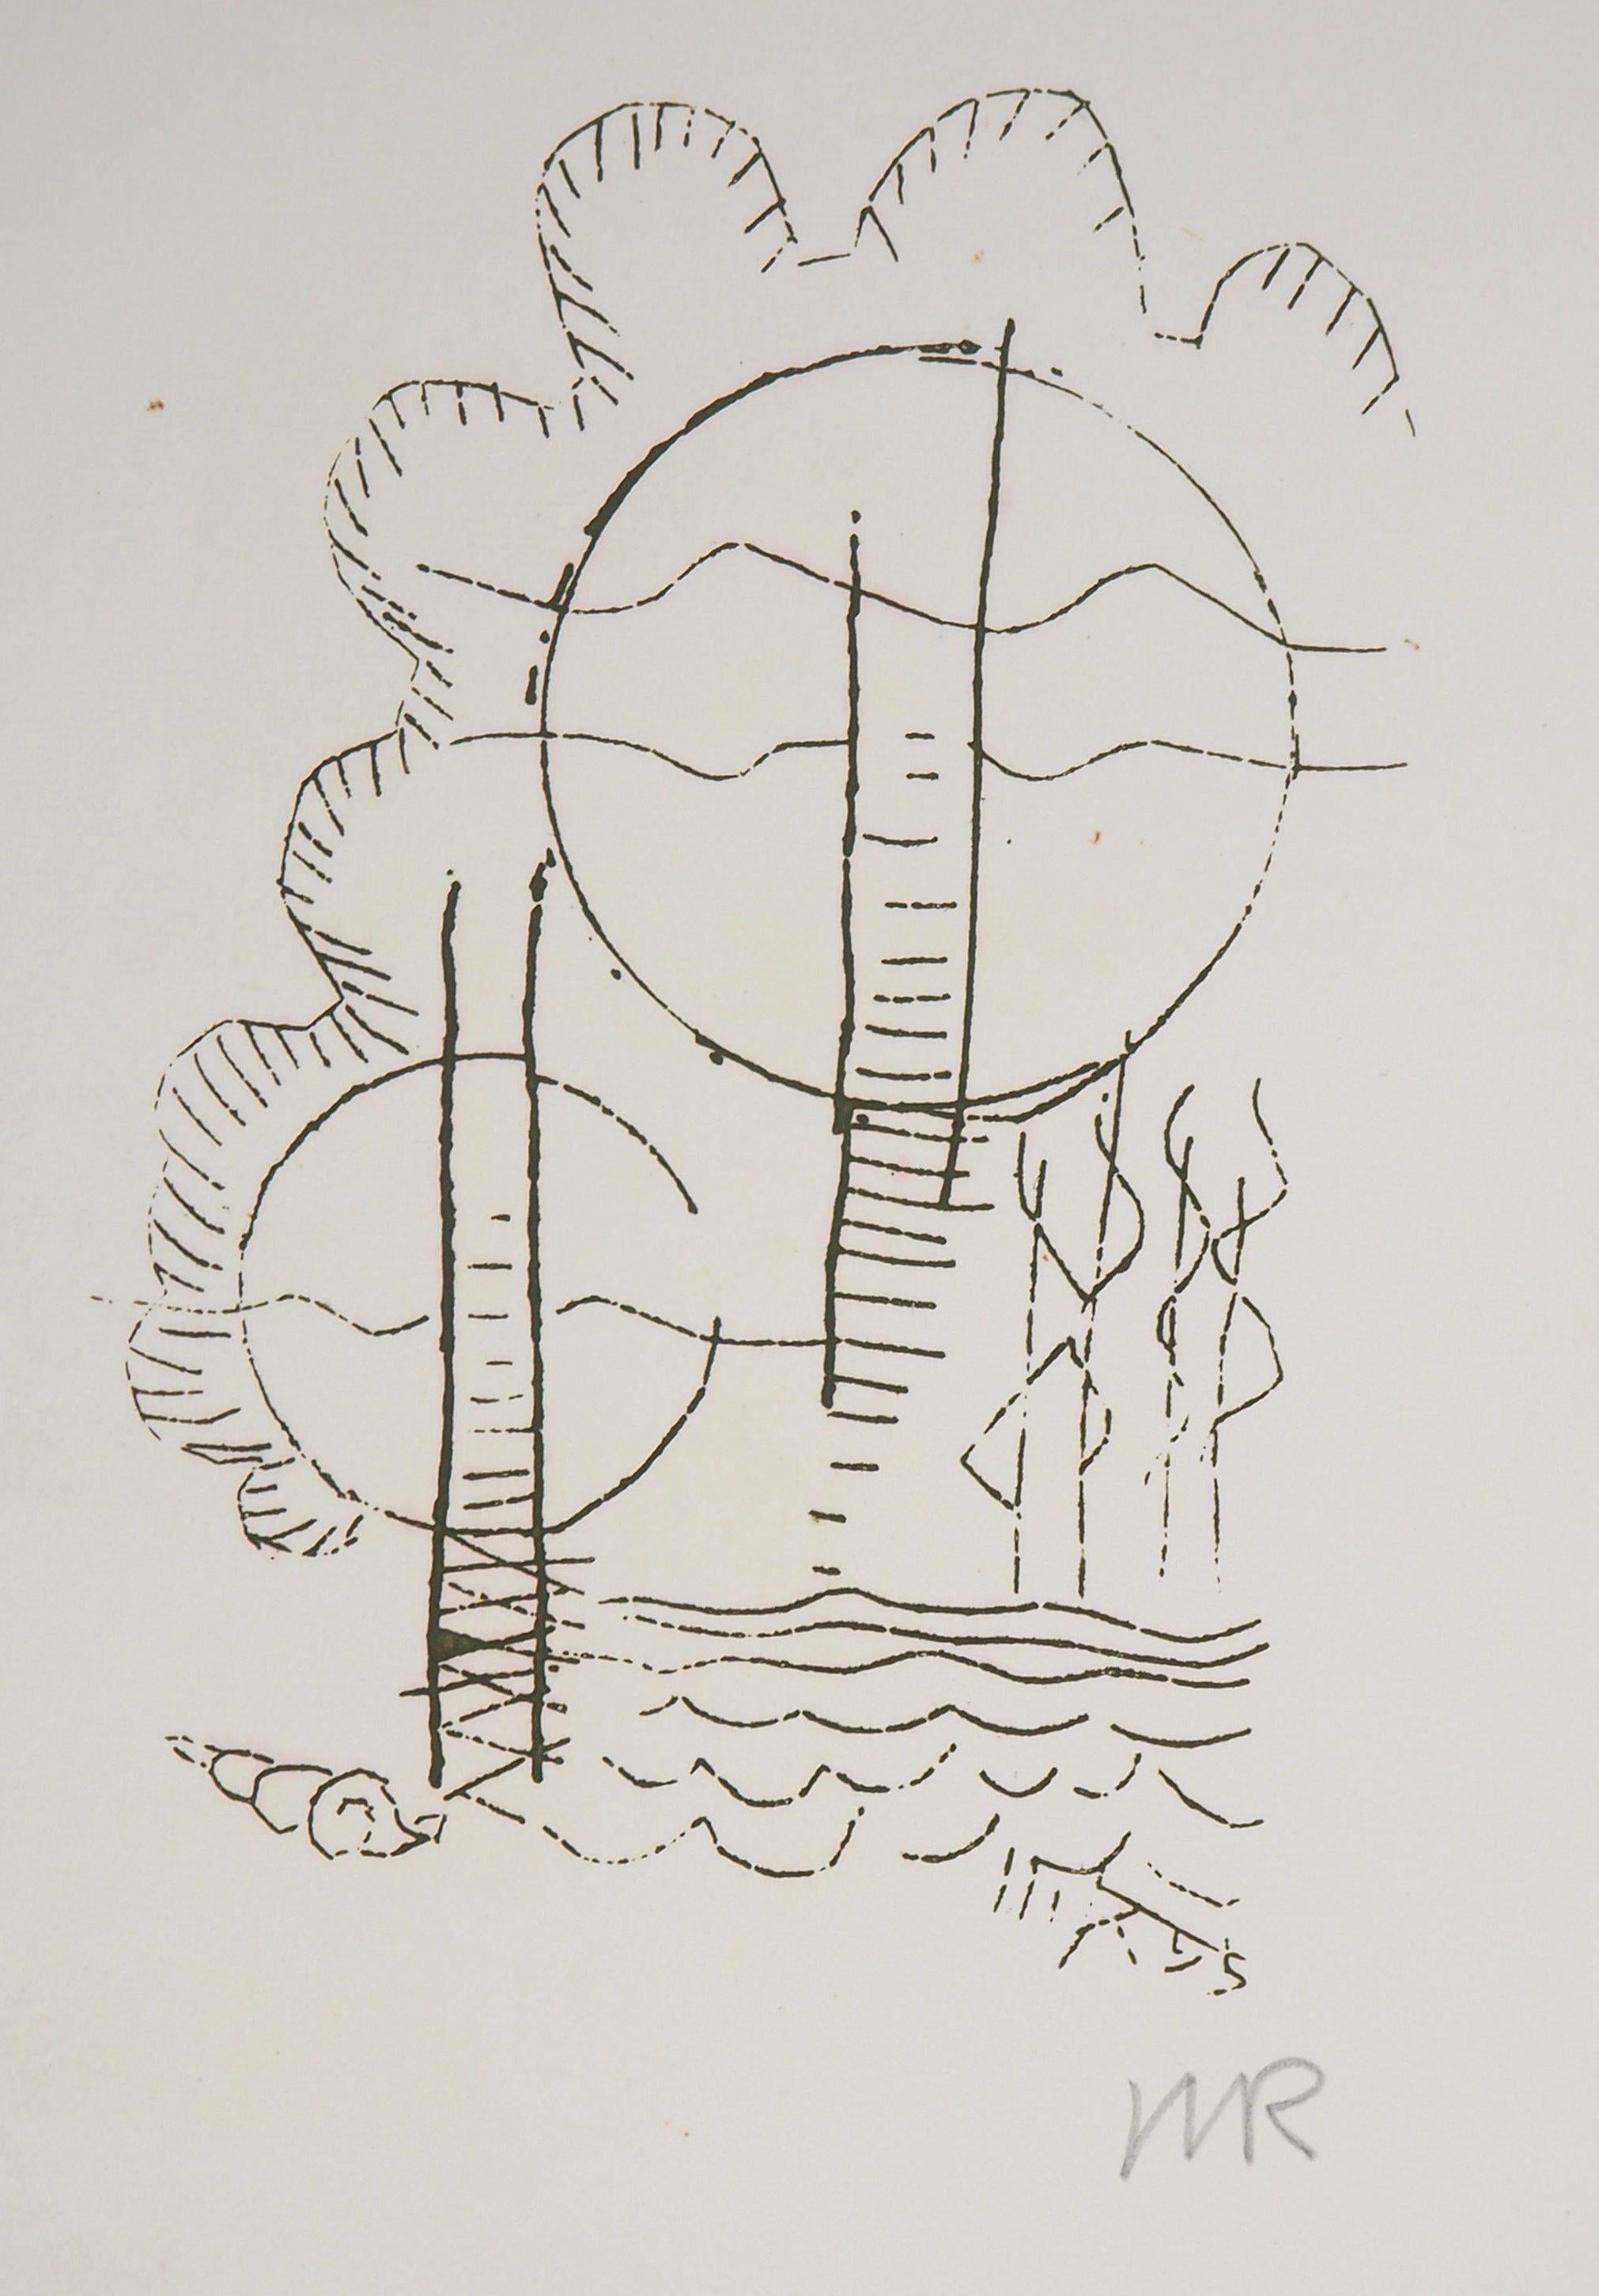 Fleurs surréalistes, Hlne, 1969 - Gravure originale signée à la main - Surréalisme Print par Man Ray